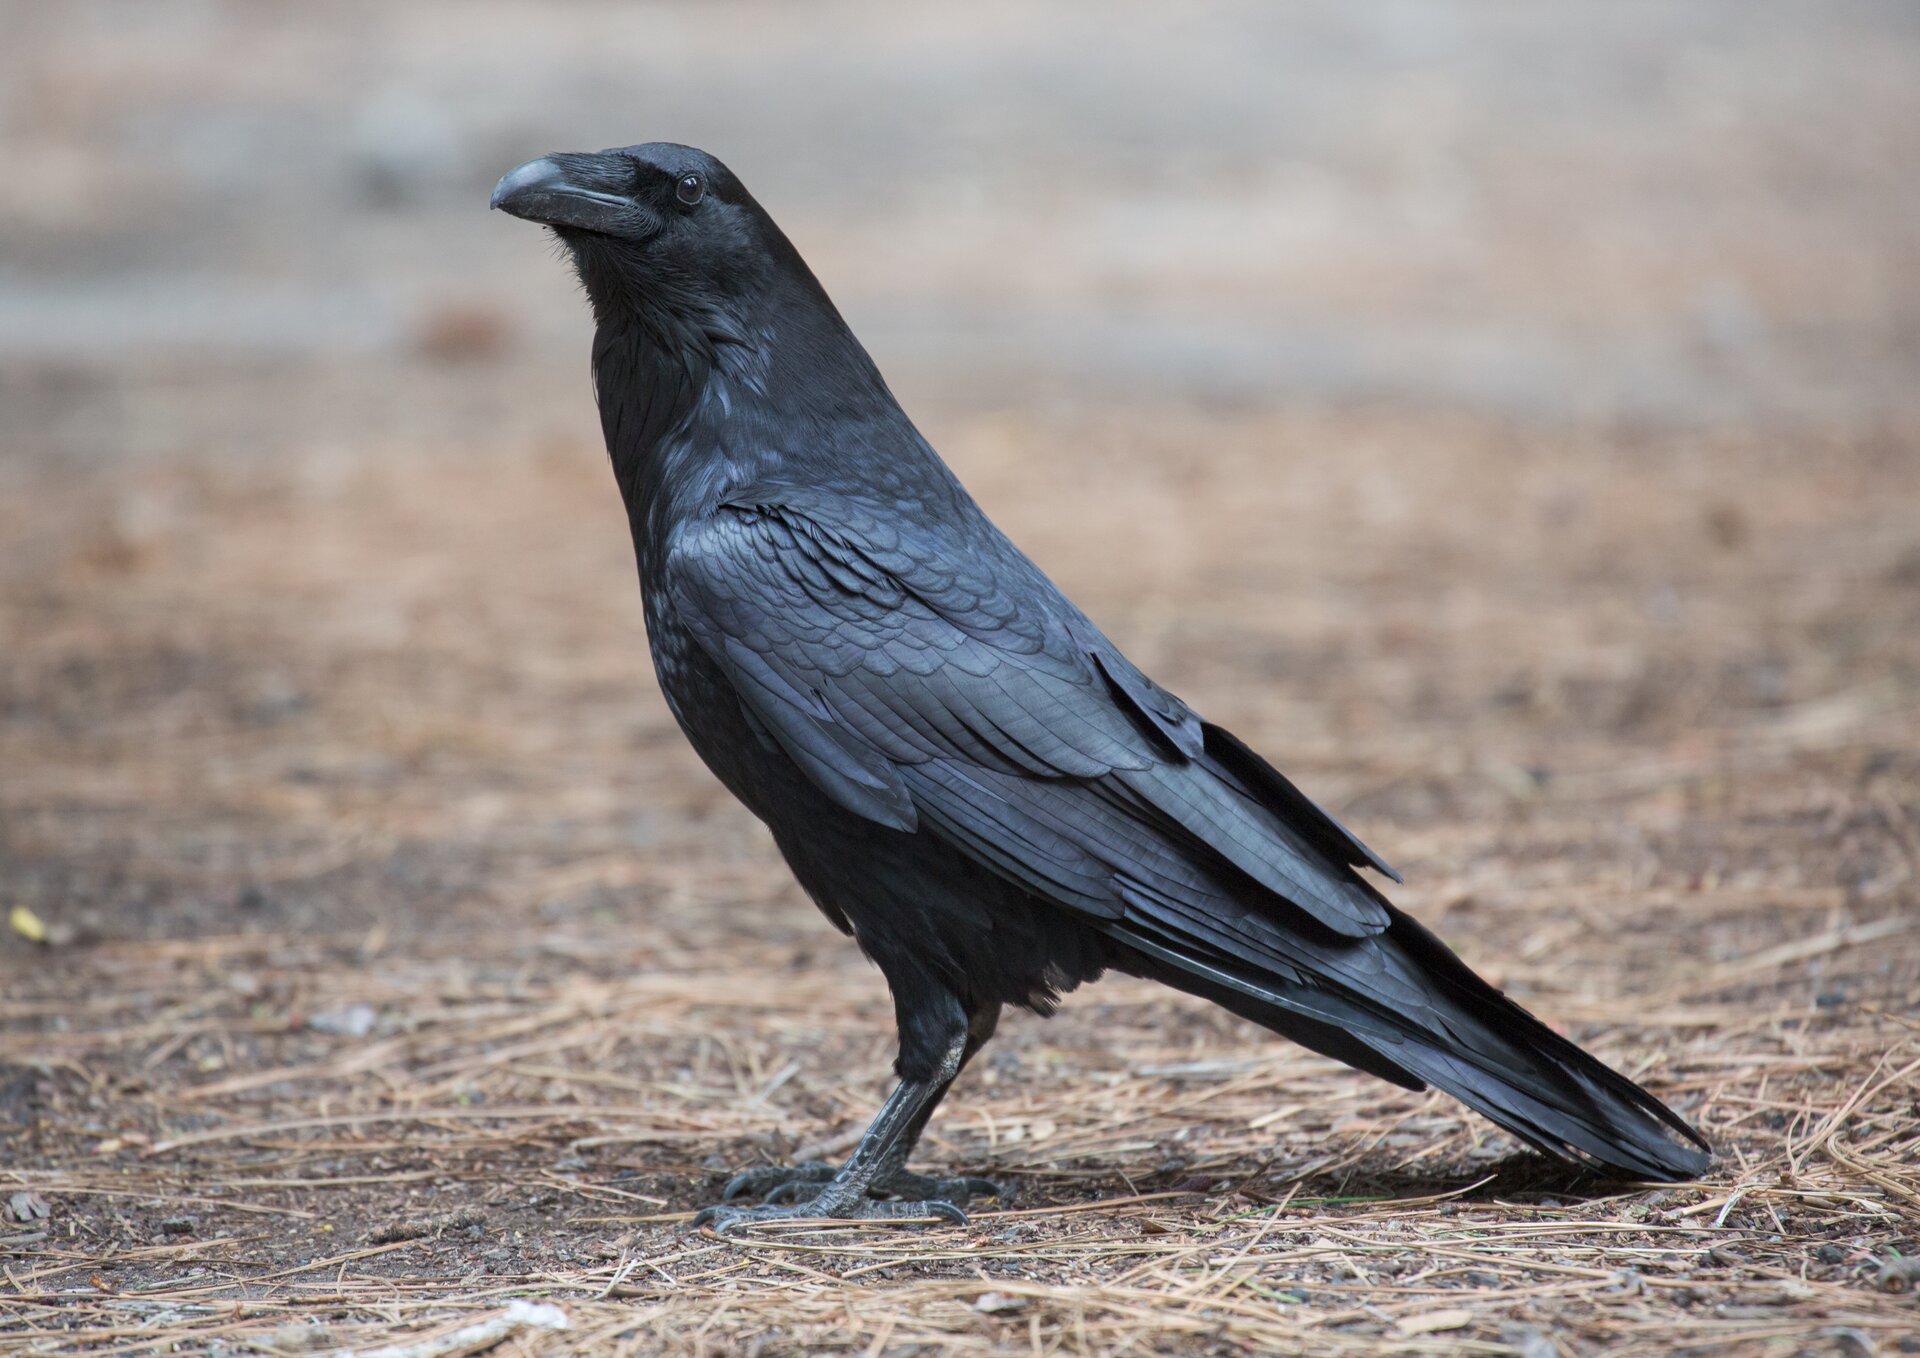 Fotografia przedstawia czarnego ptaka pokazanego z profilu. Stoi na ziemi. Ma wydatny dziób i małe oczy.